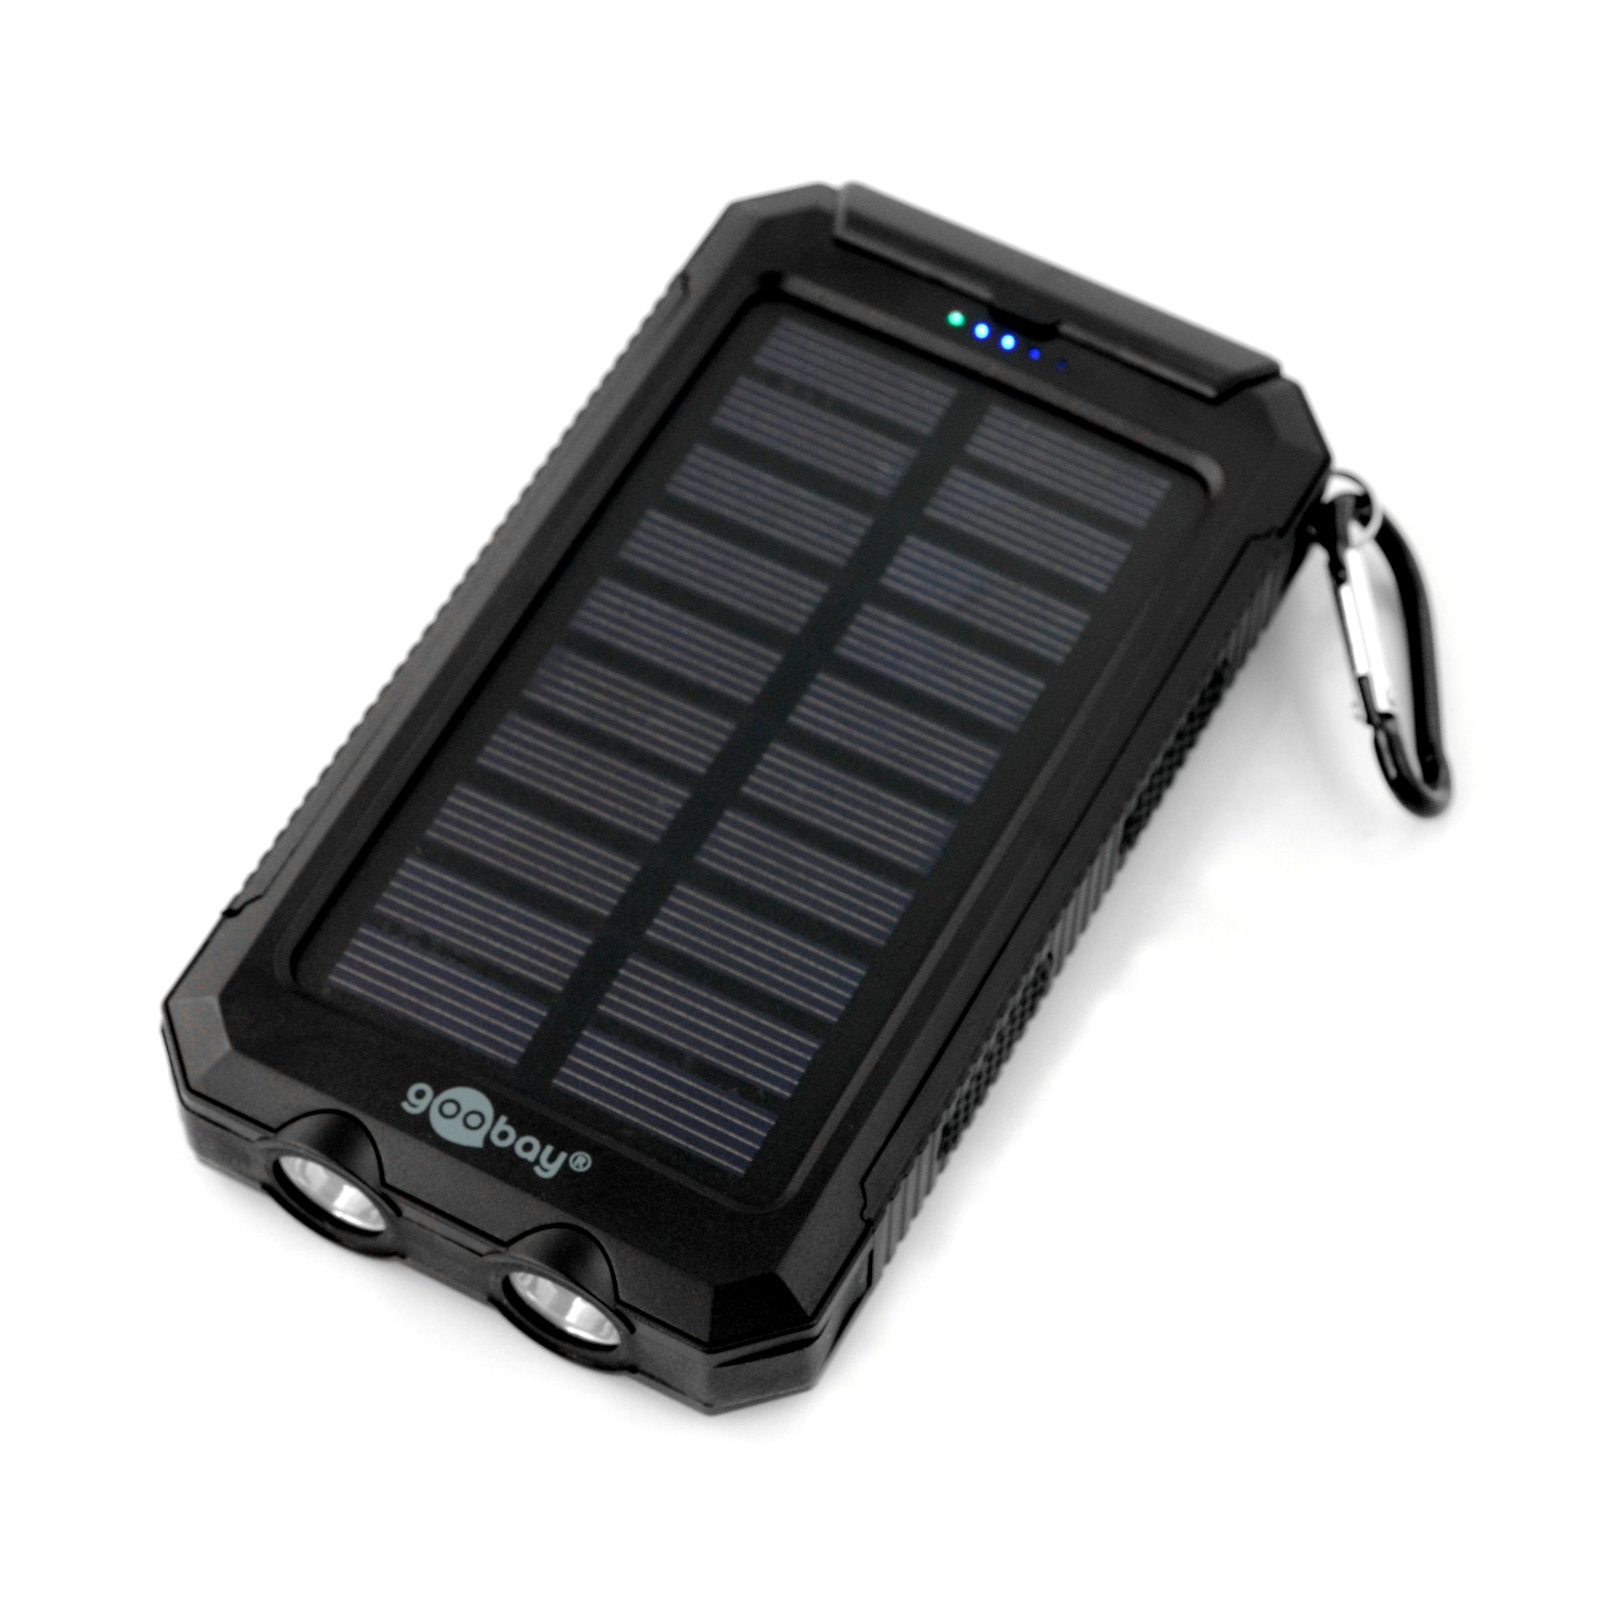 Mobilna bateria Goobay PowerBank 8.0 (8000 mAh)